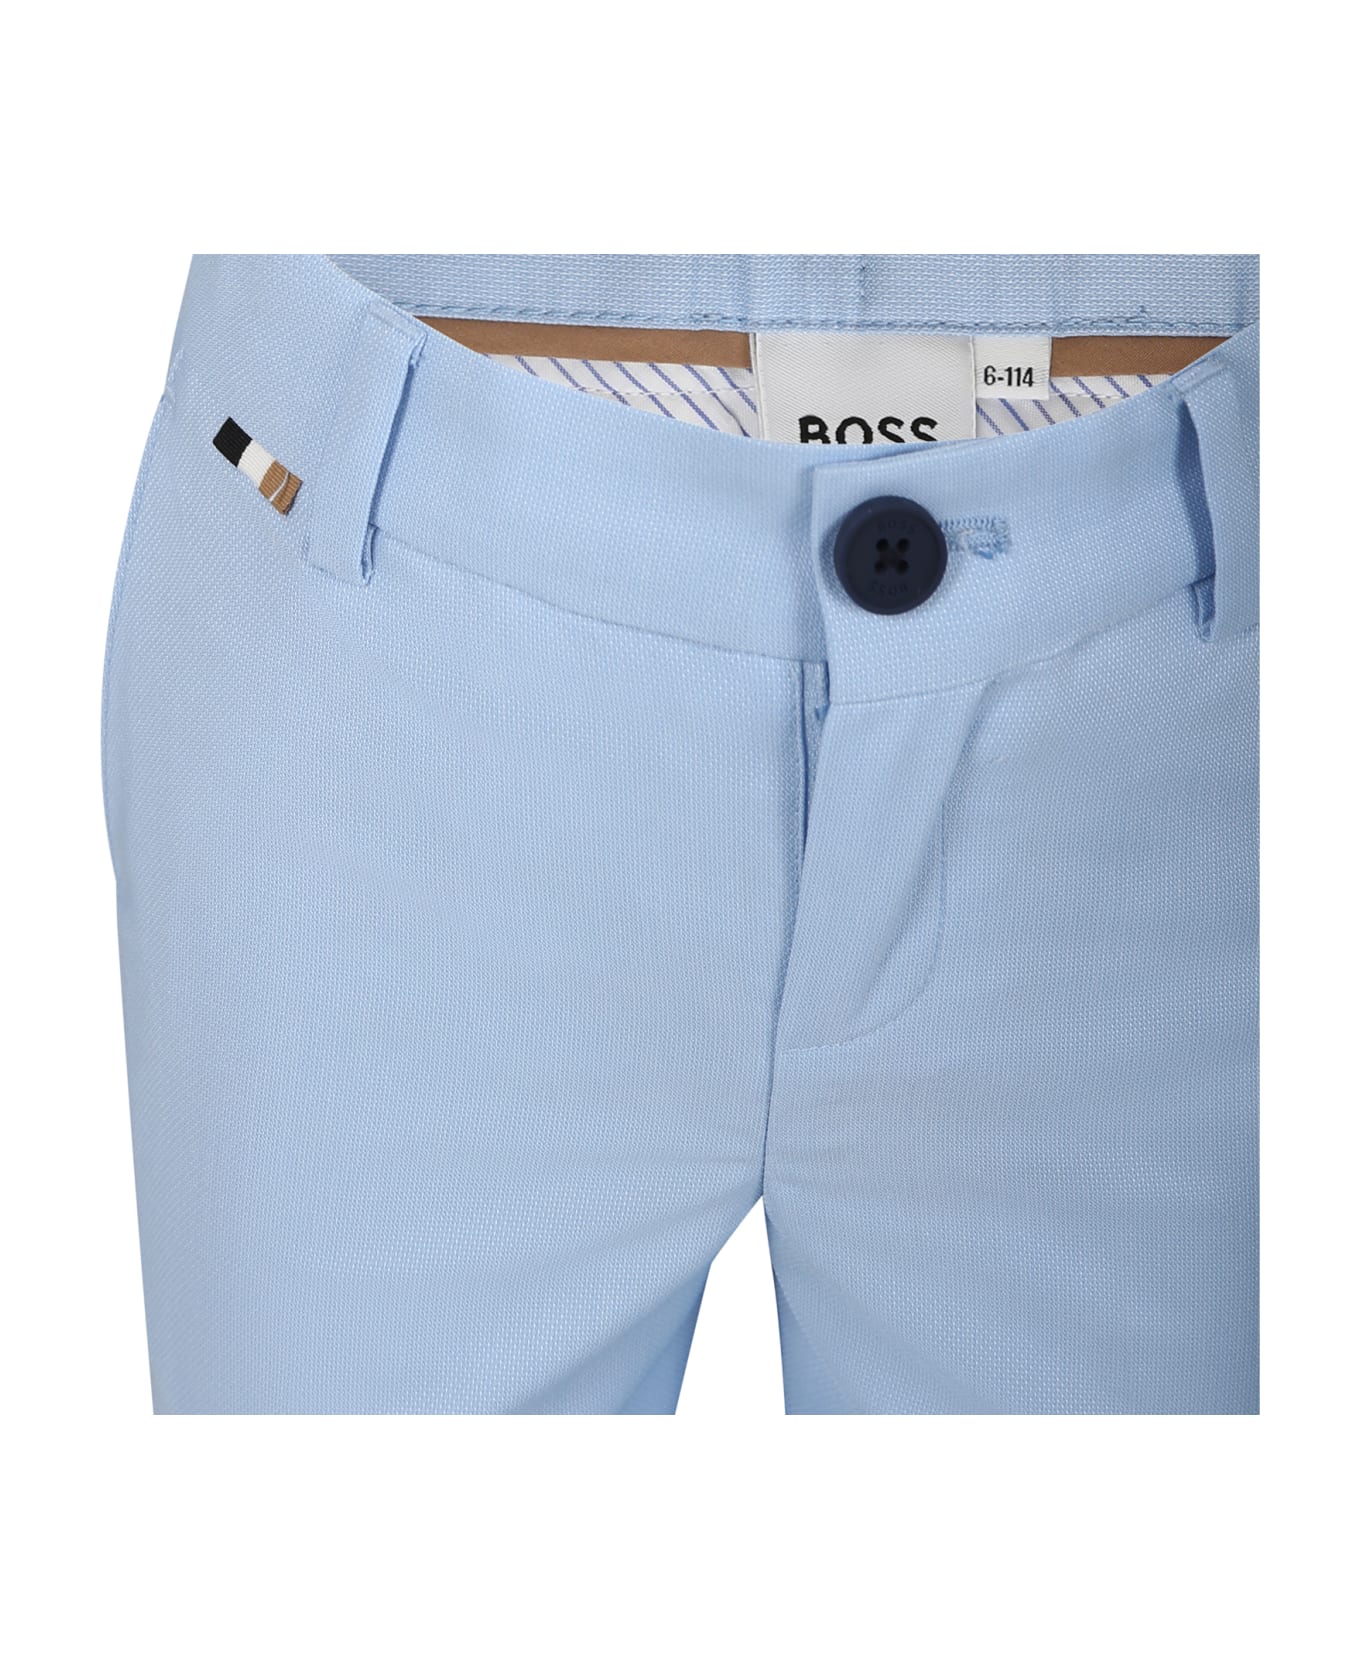 Hugo Boss Elegant Sky Blue Trousers For Boy - Light Blue ボトムス